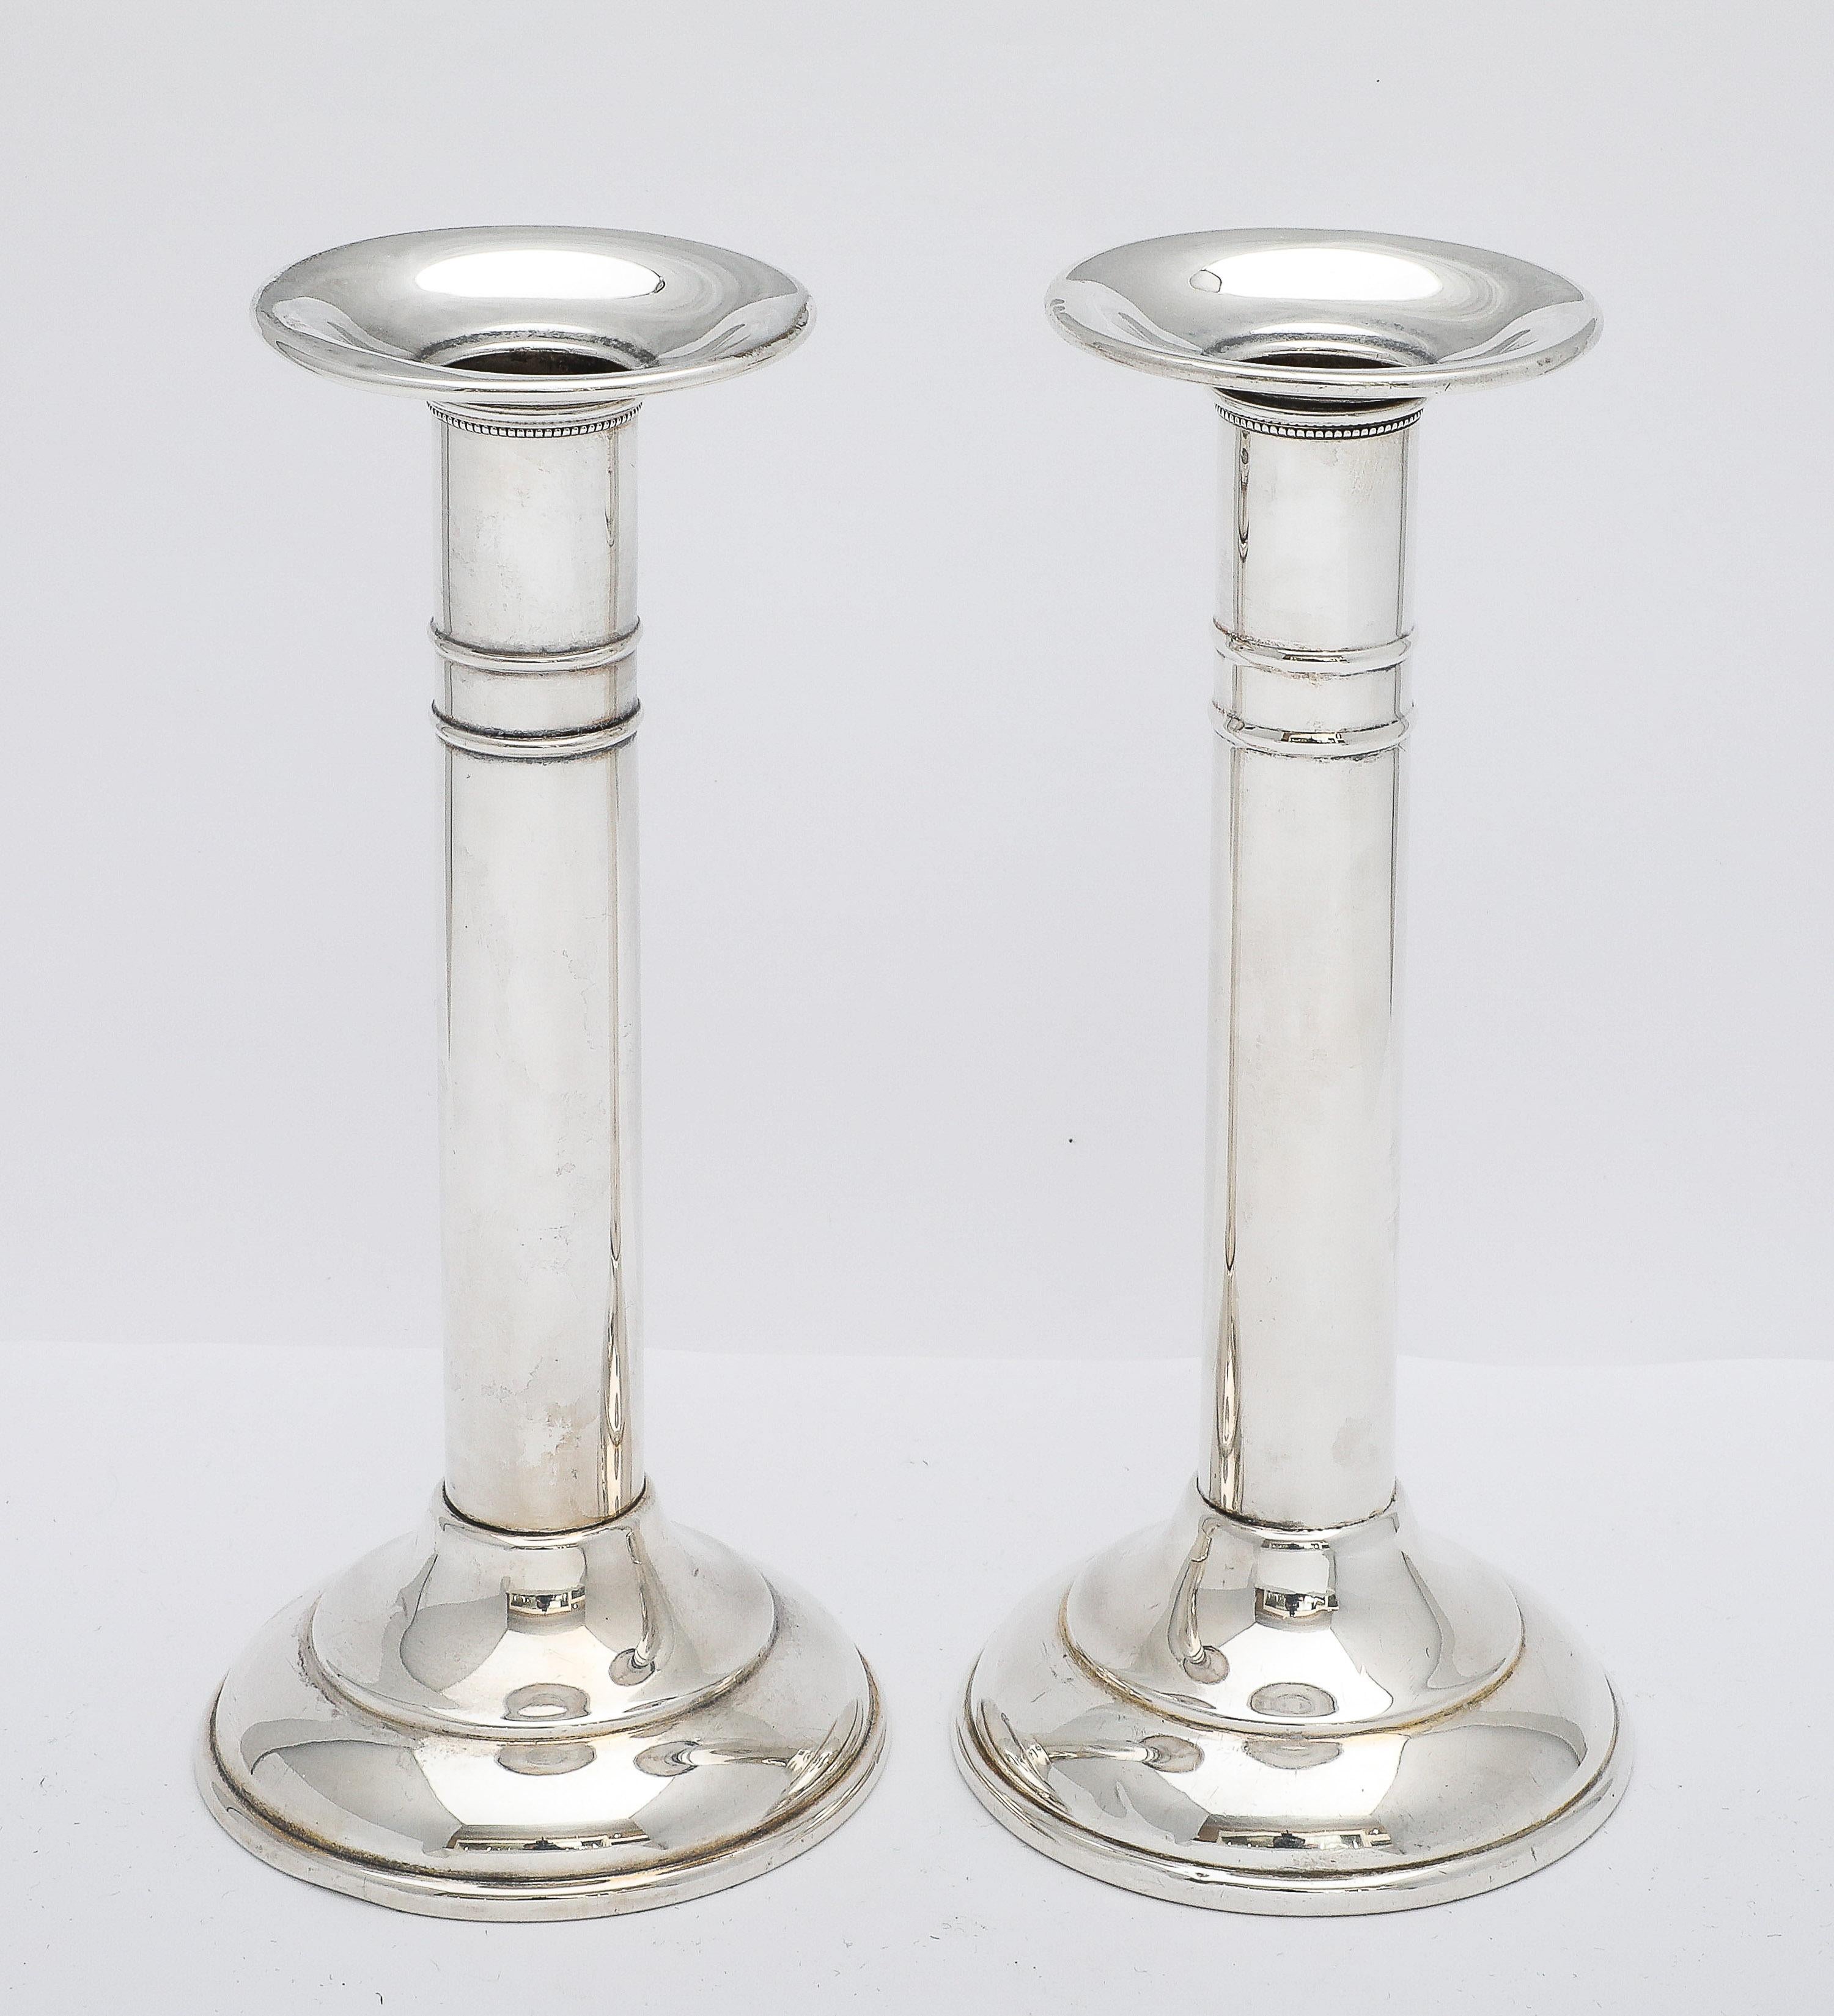 Paire de chandeliers en argent sterling de la période édouardienne, Adelphi Silver Co, New York, vers 1915. 1915. Chaque chandelier mesure plus de 6 1/2 pouces de haut x 3 pouces de diamètre (au point le plus large - à travers la base). Chaque